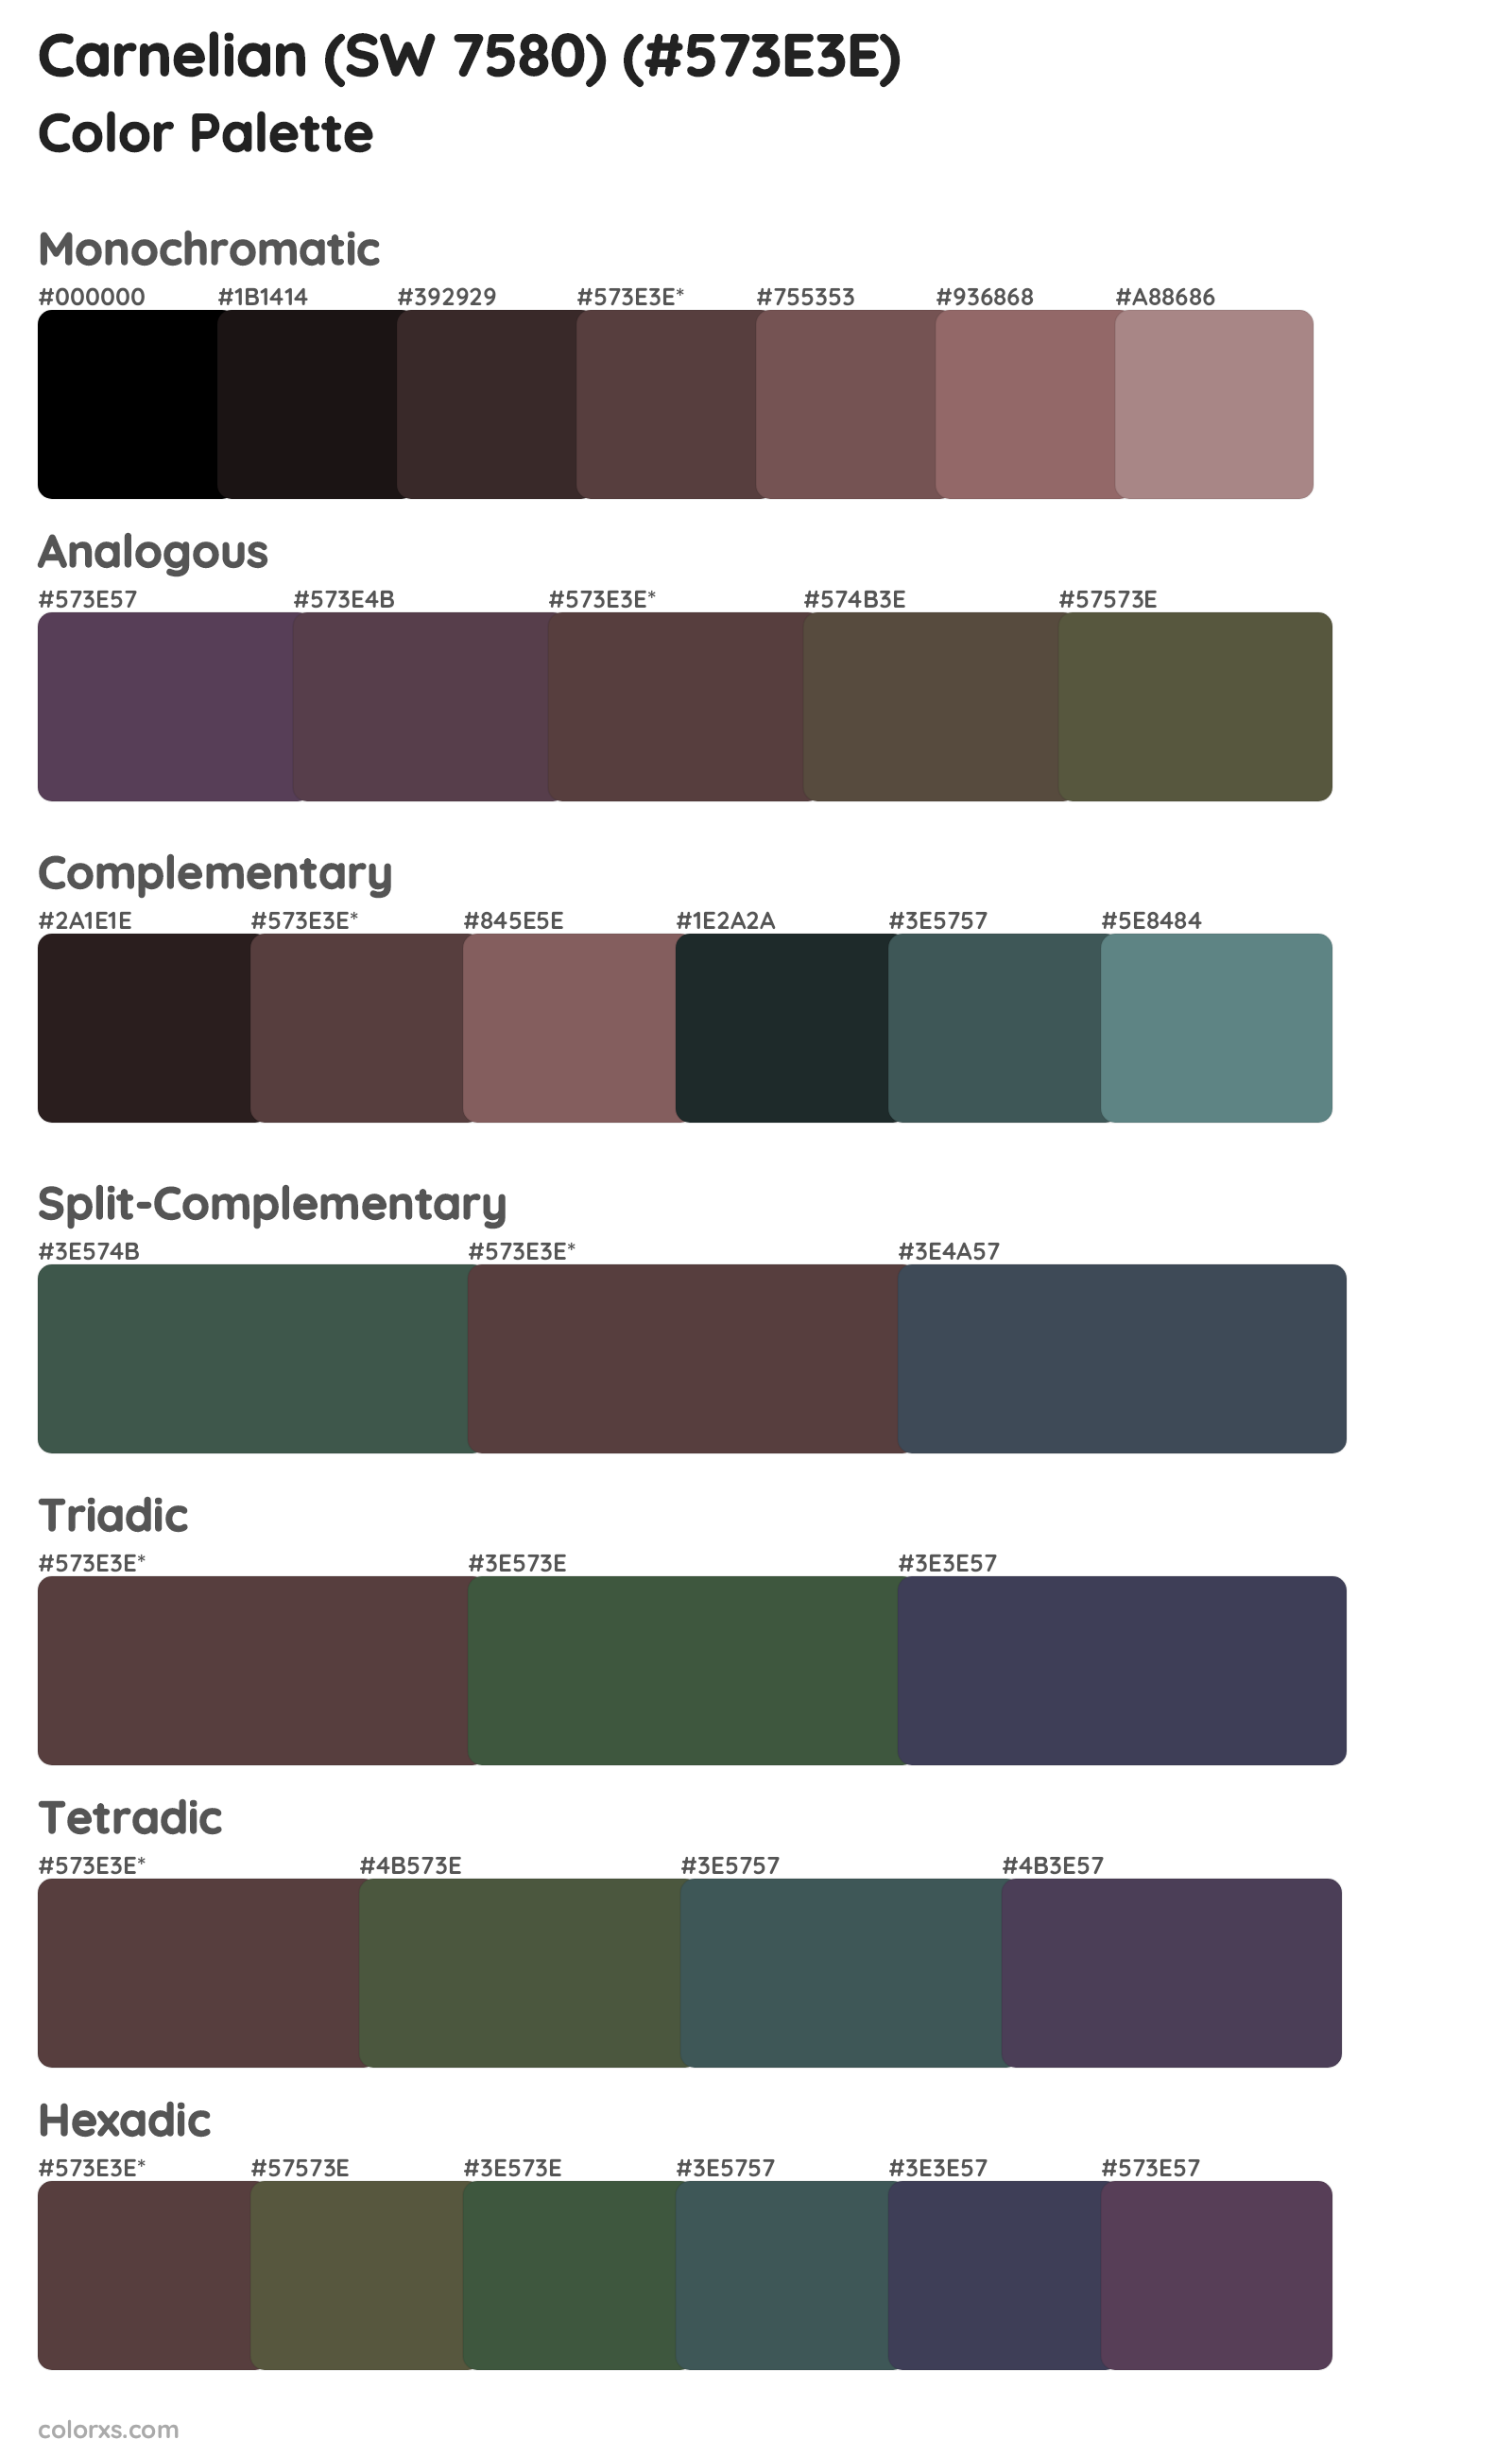 Carnelian (SW 7580) Color Scheme Palettes